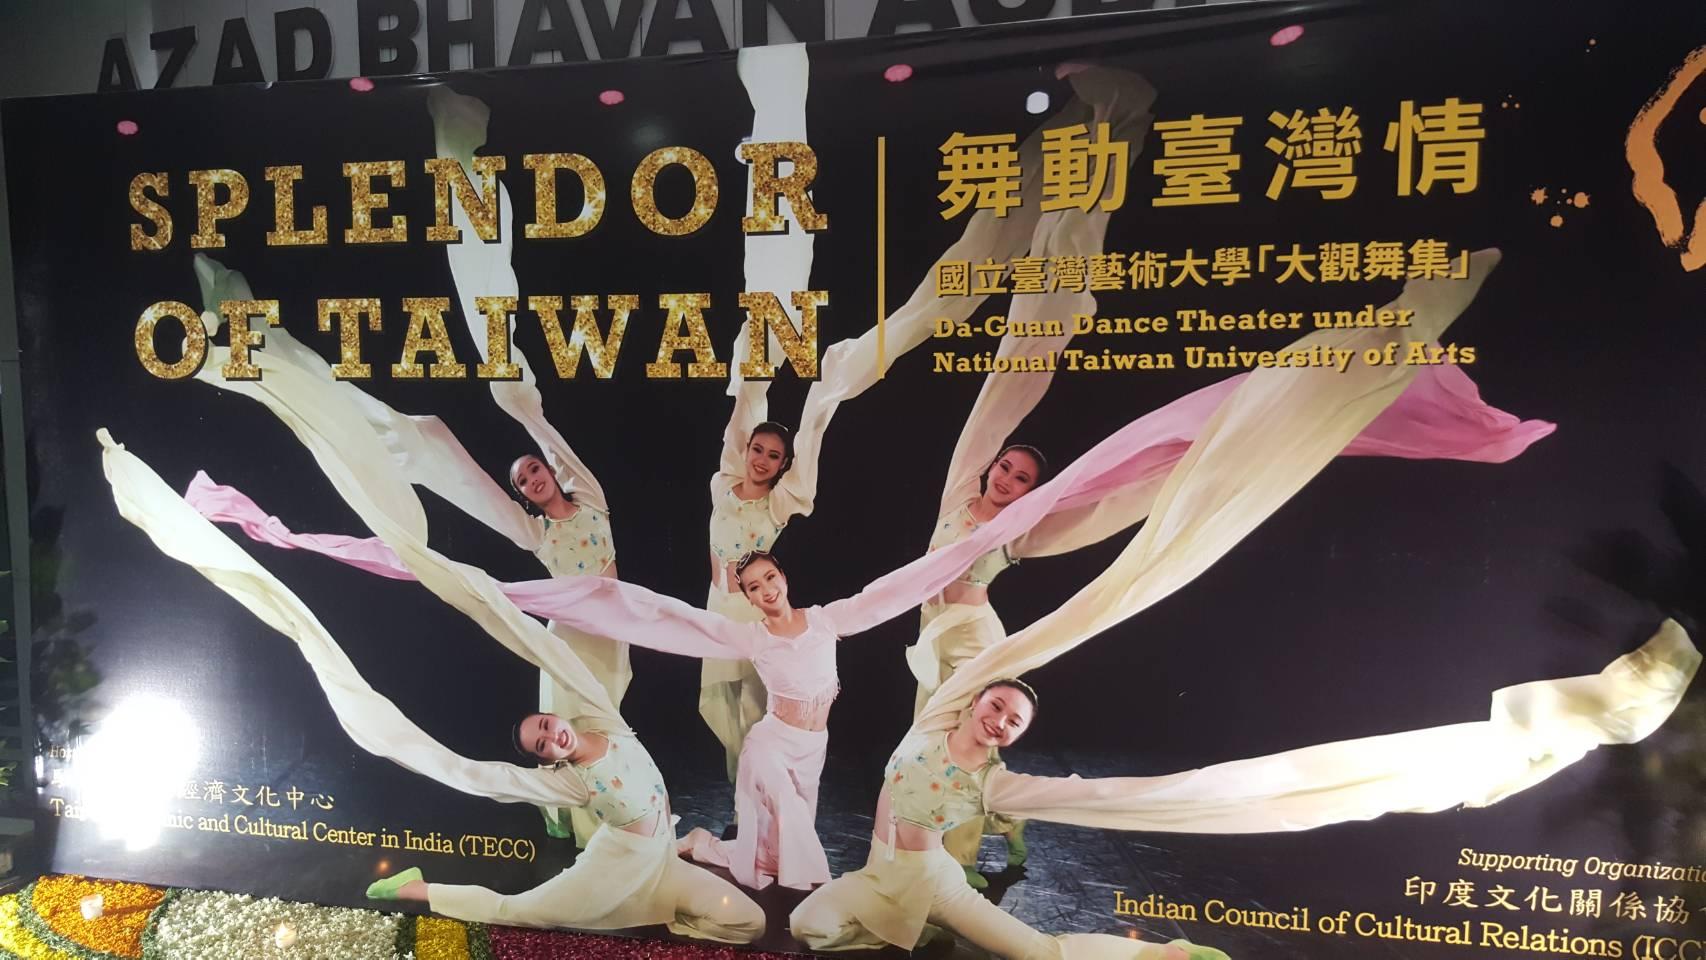 印度文化關係協會(ICCR)阿札德禮堂入口展示「舞動臺灣情」大型看板。